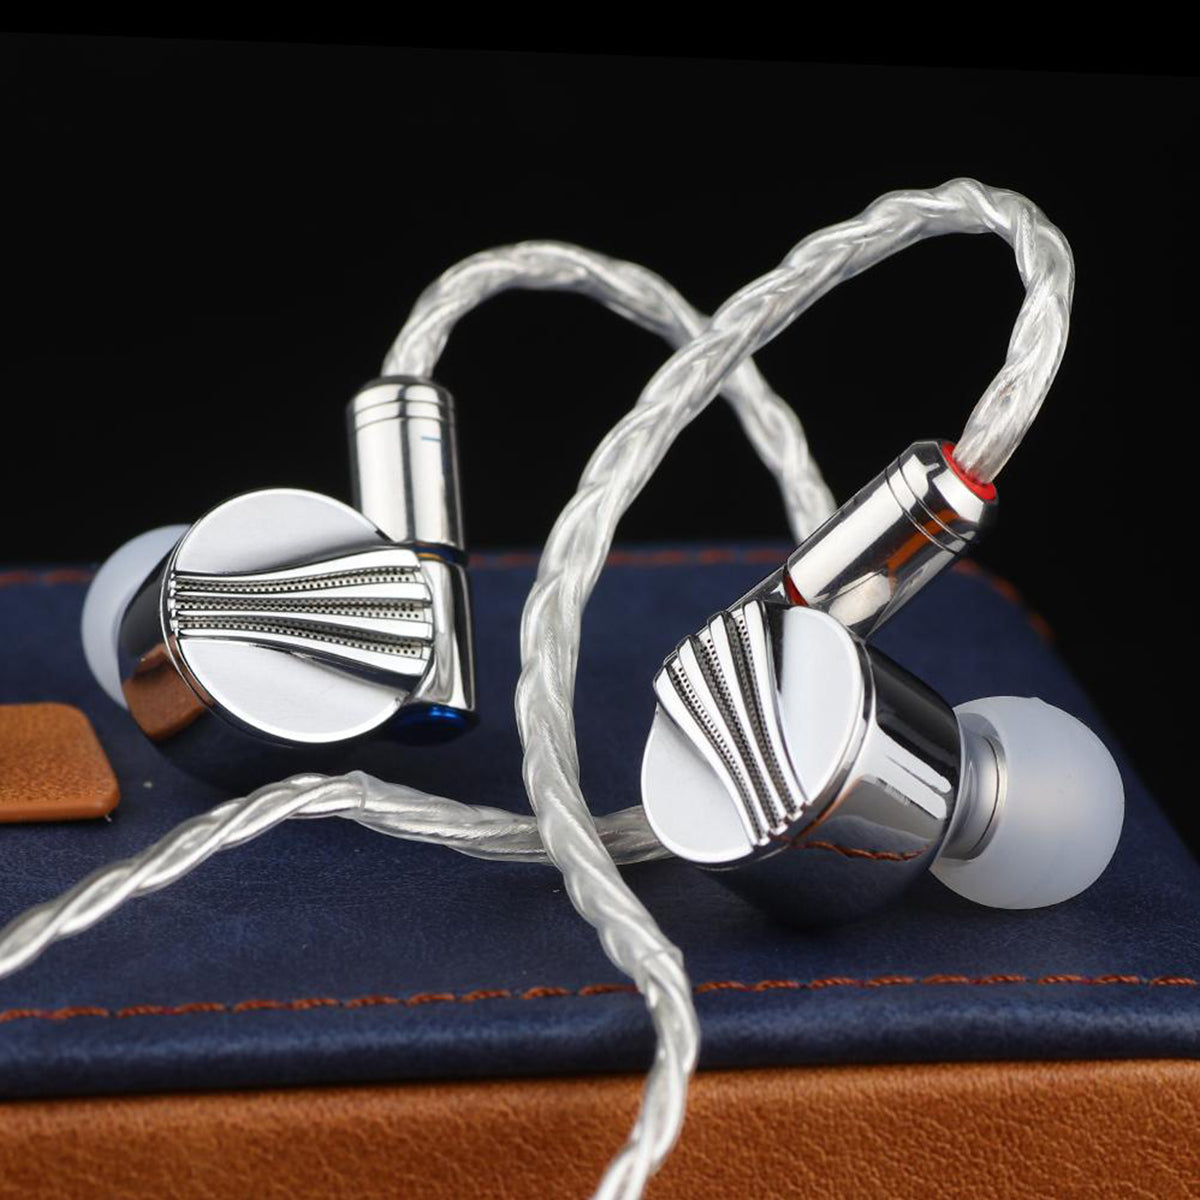 FiiO FD5 Top IEM| In Ear Monitors | Best Earphones